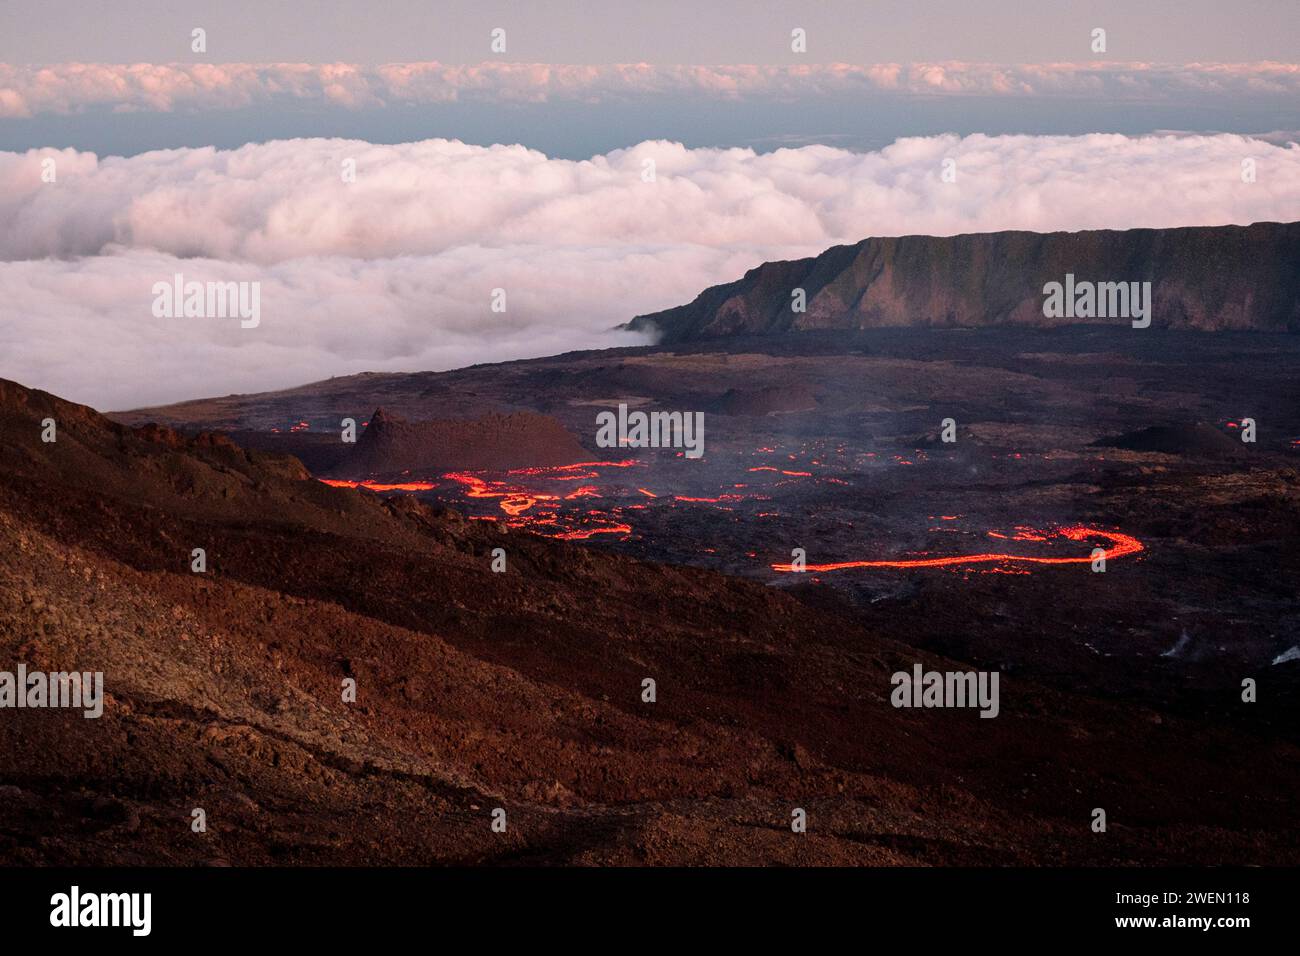 Una vista accattivante del vulcano Piton de la Fournaise sull'isola di Reunion, che mostra l'impressionante flusso di lava in primo piano. Foto Stock